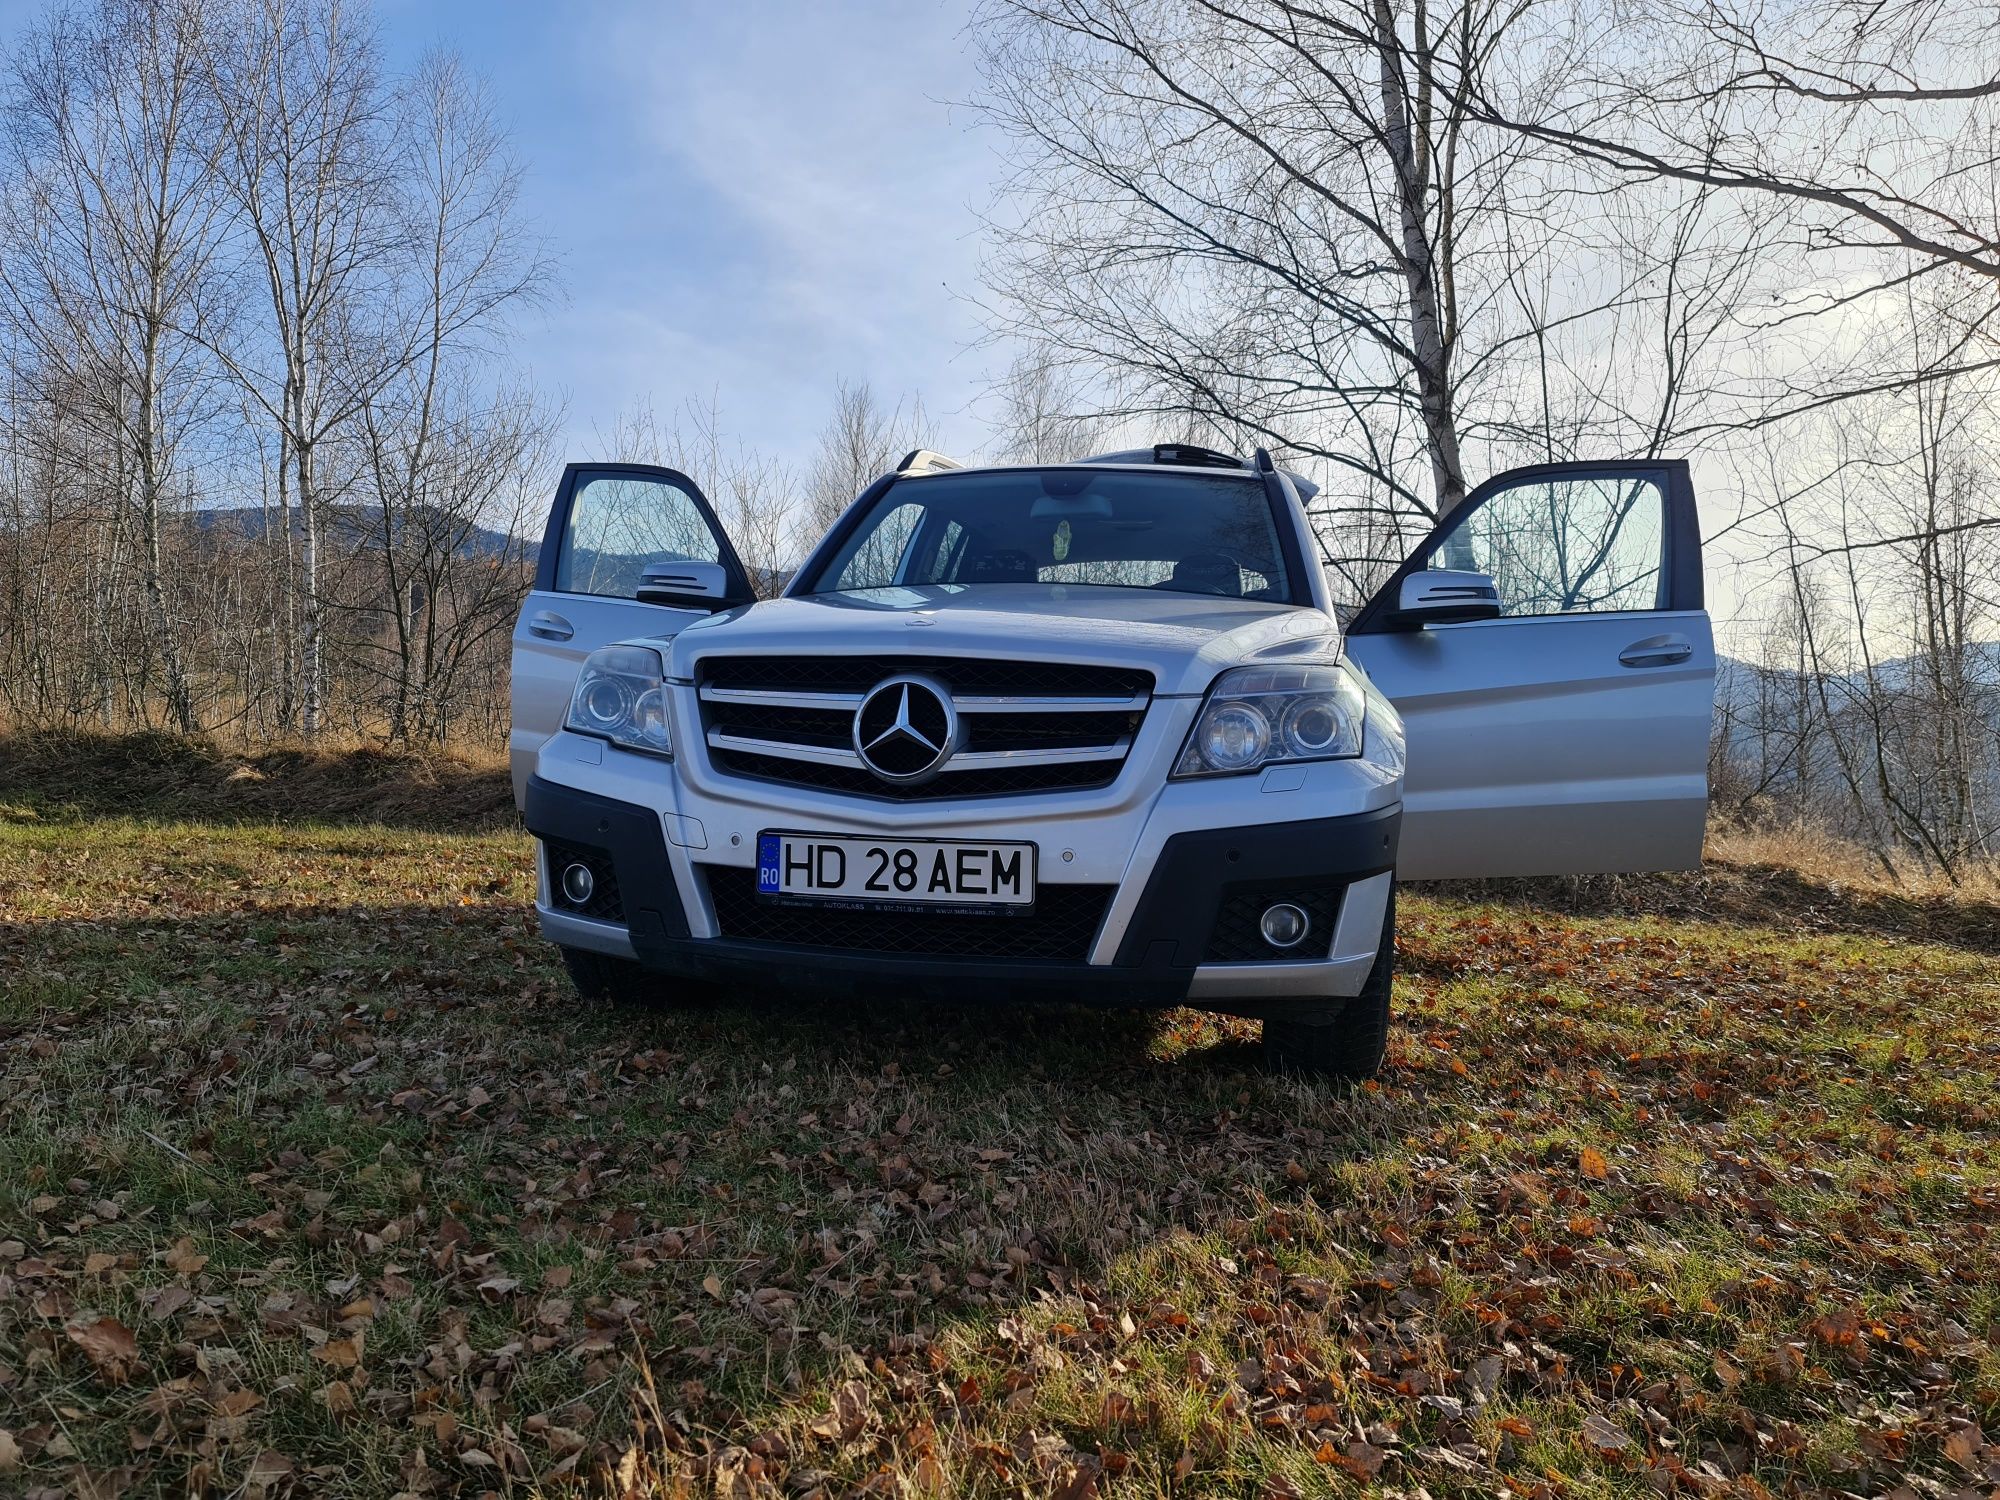 Vând Mercedes-Benz Glk 2.2 2009 4matic . Preț 7800 euro negociabil